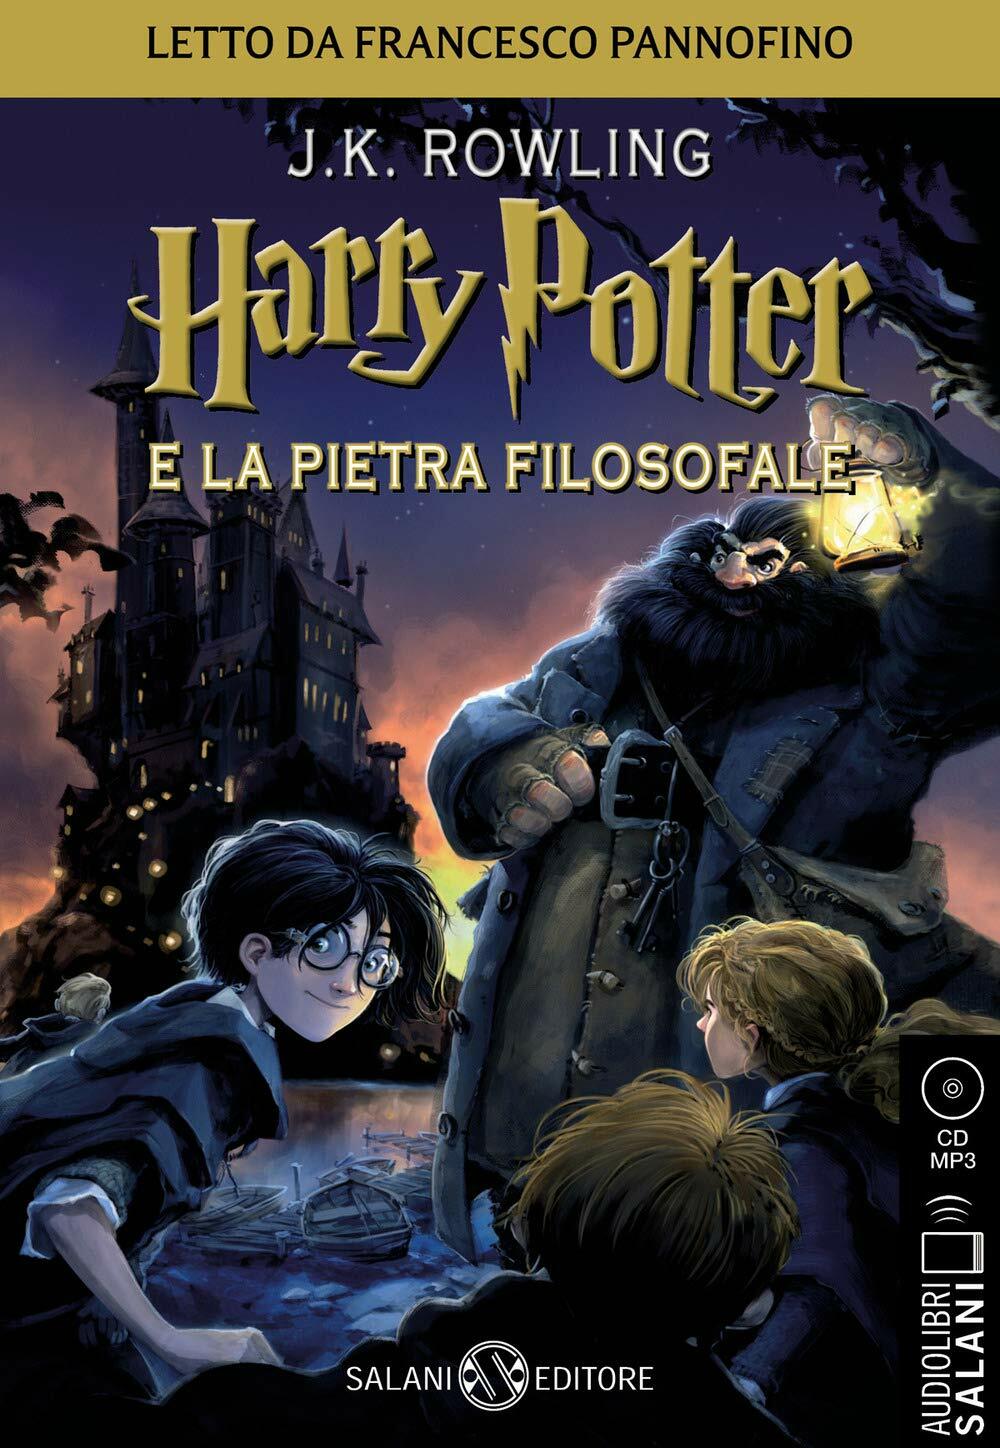 Harry Potter e la Pietra Filosofale - Audiolibro CD MP3: Vol.1 (Audio CD - Audiolibro)